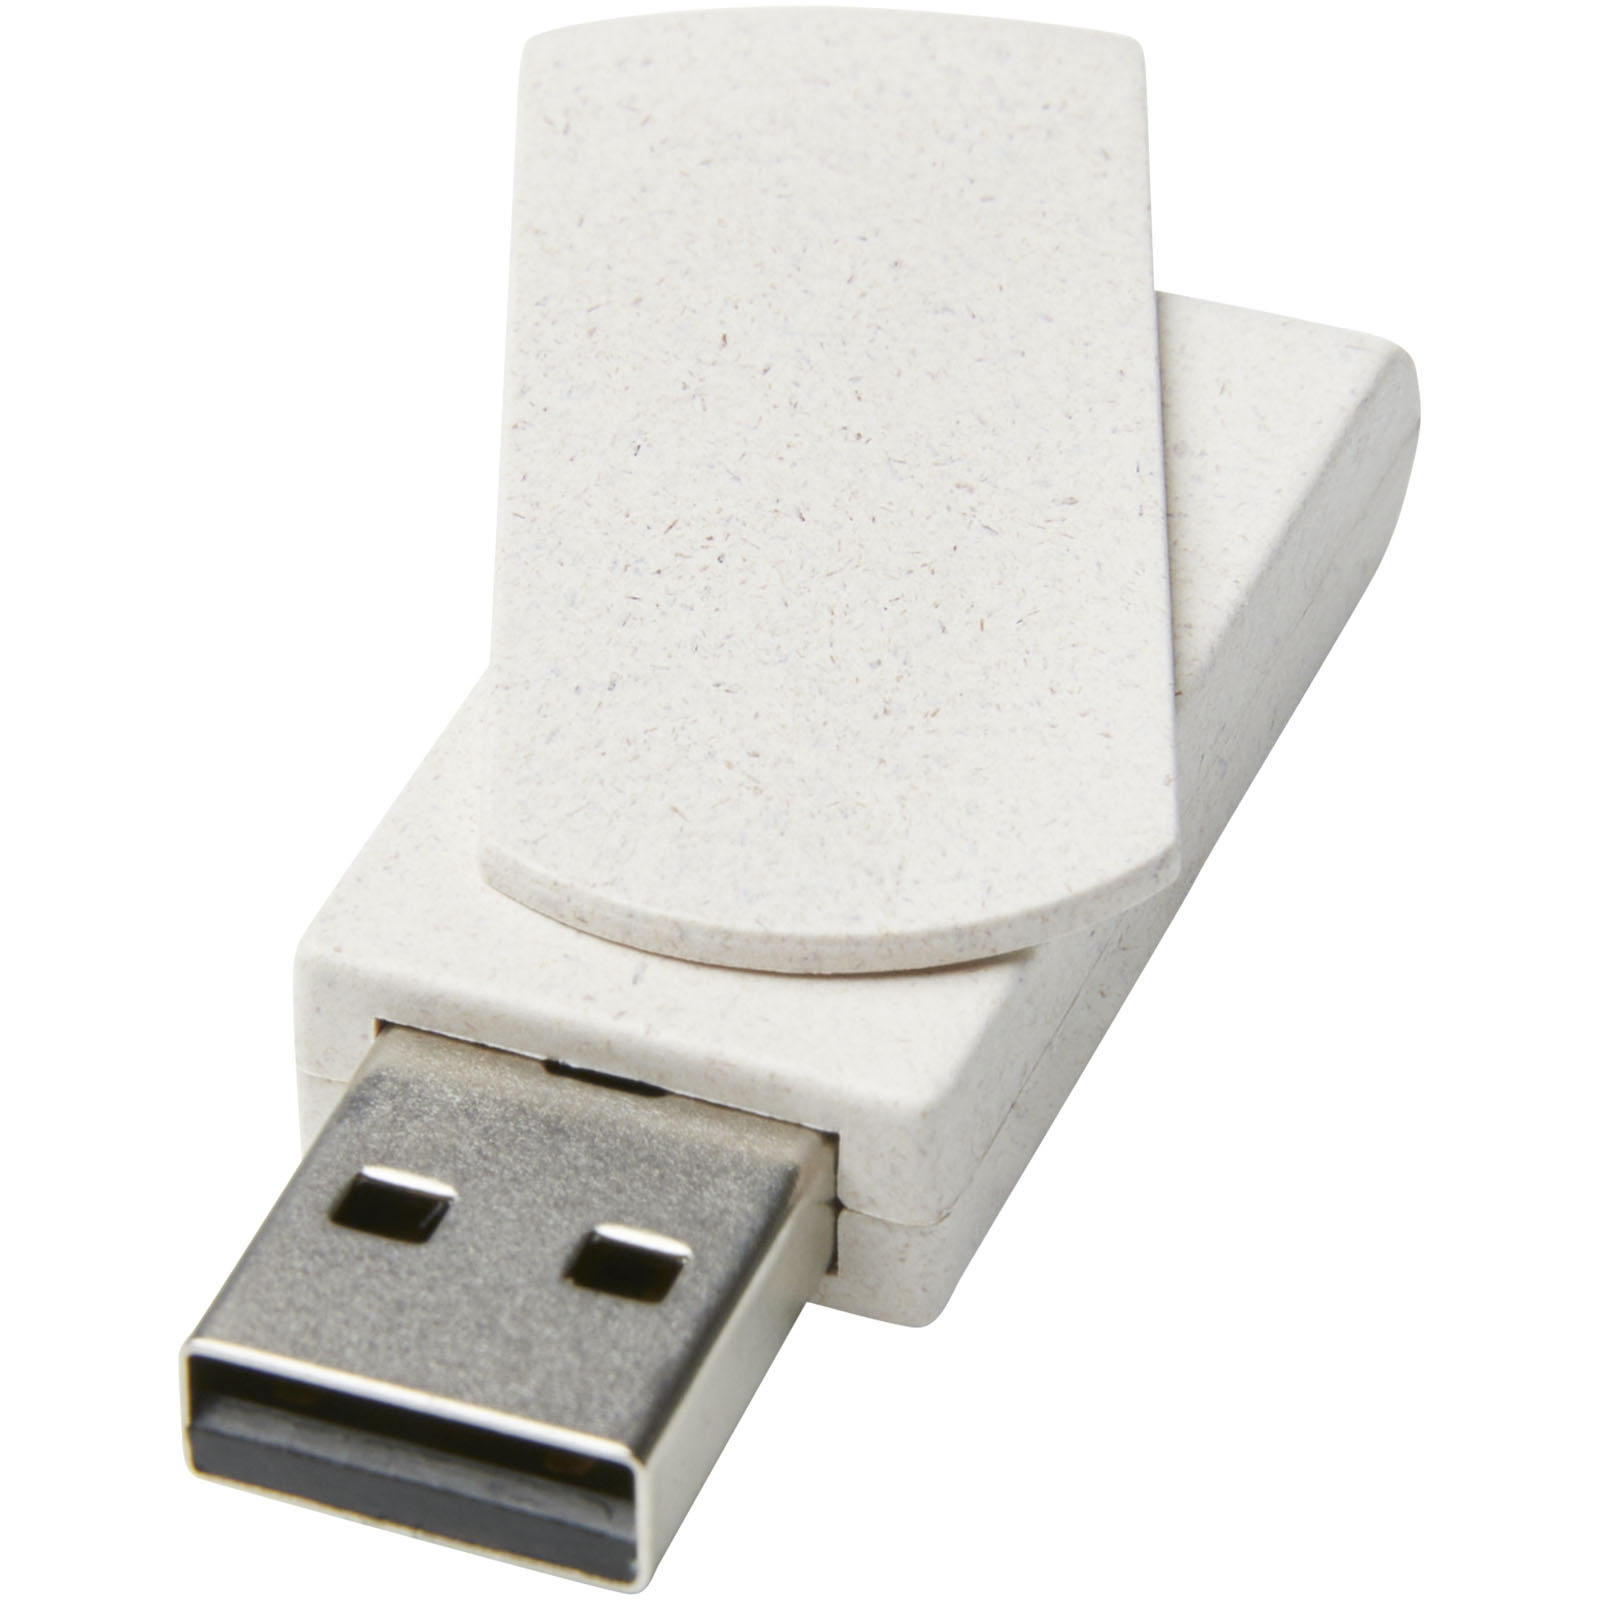 Clés USB publicitaires - Clé USB Rotate 4 Go en paille de blé